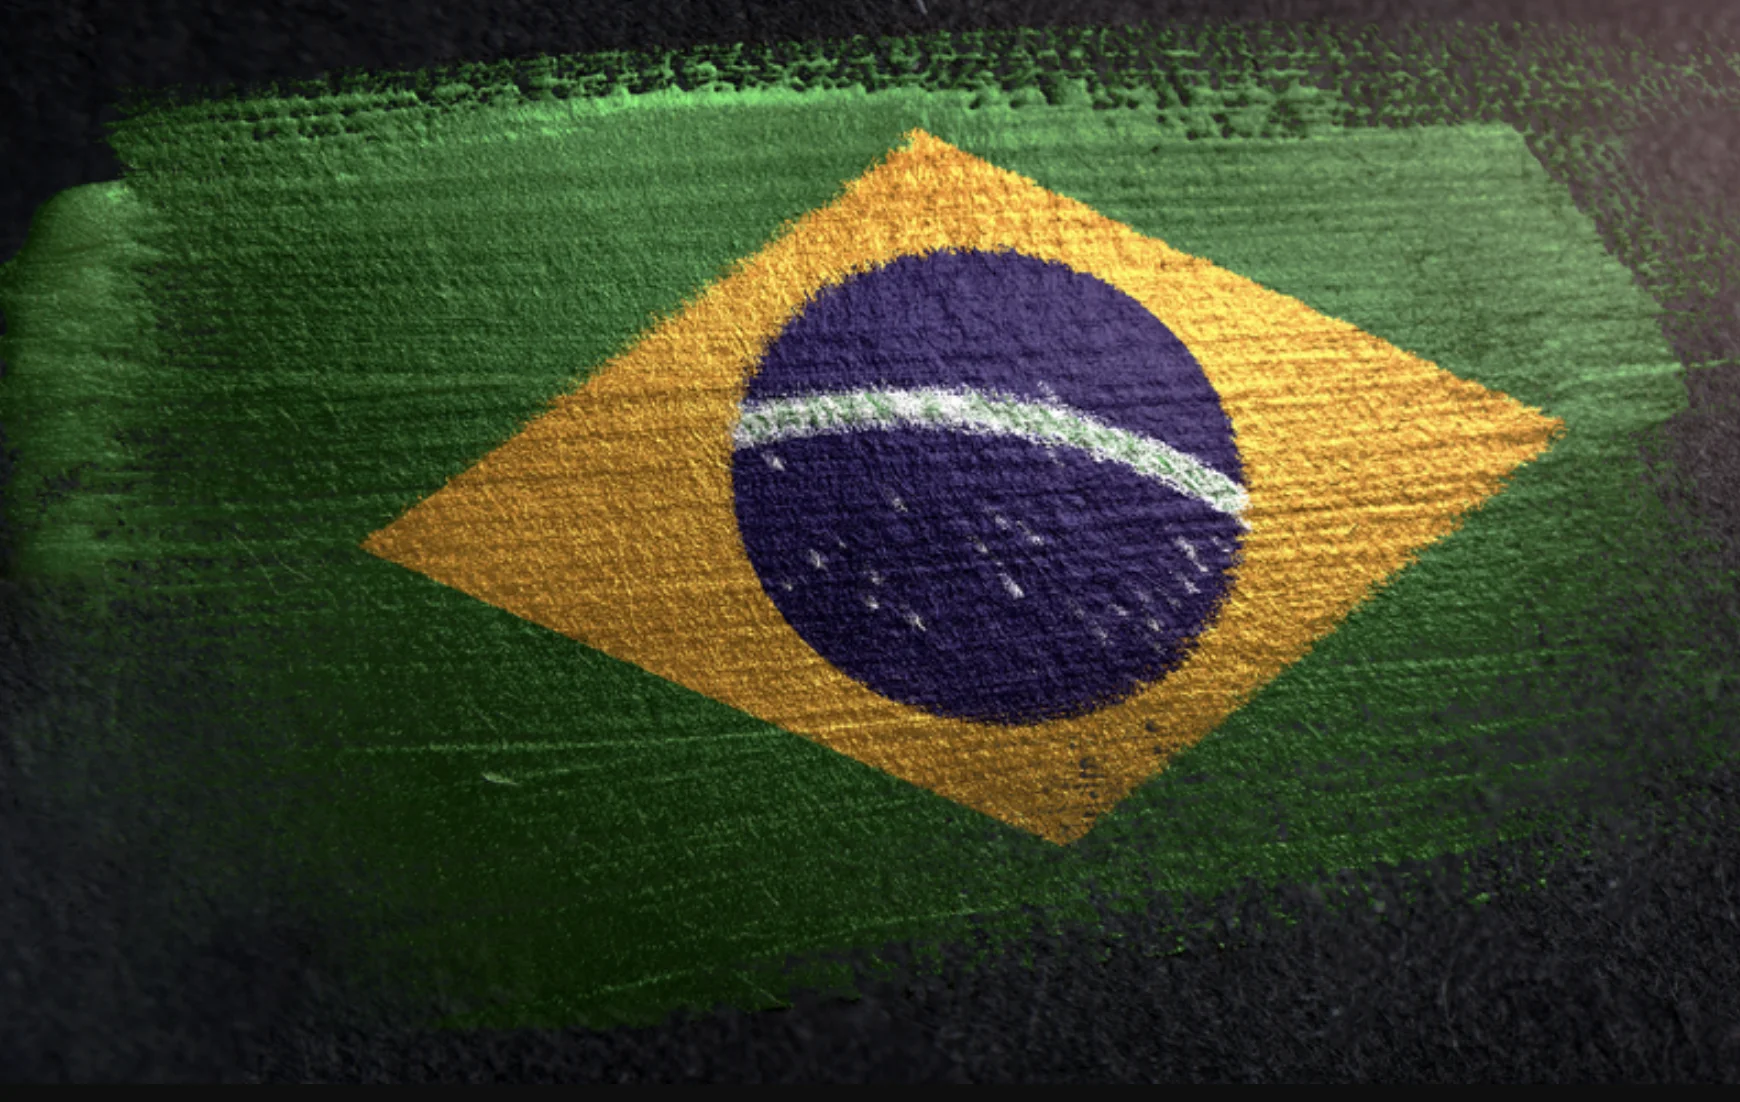 Gambling legalization in Brazil is progressing